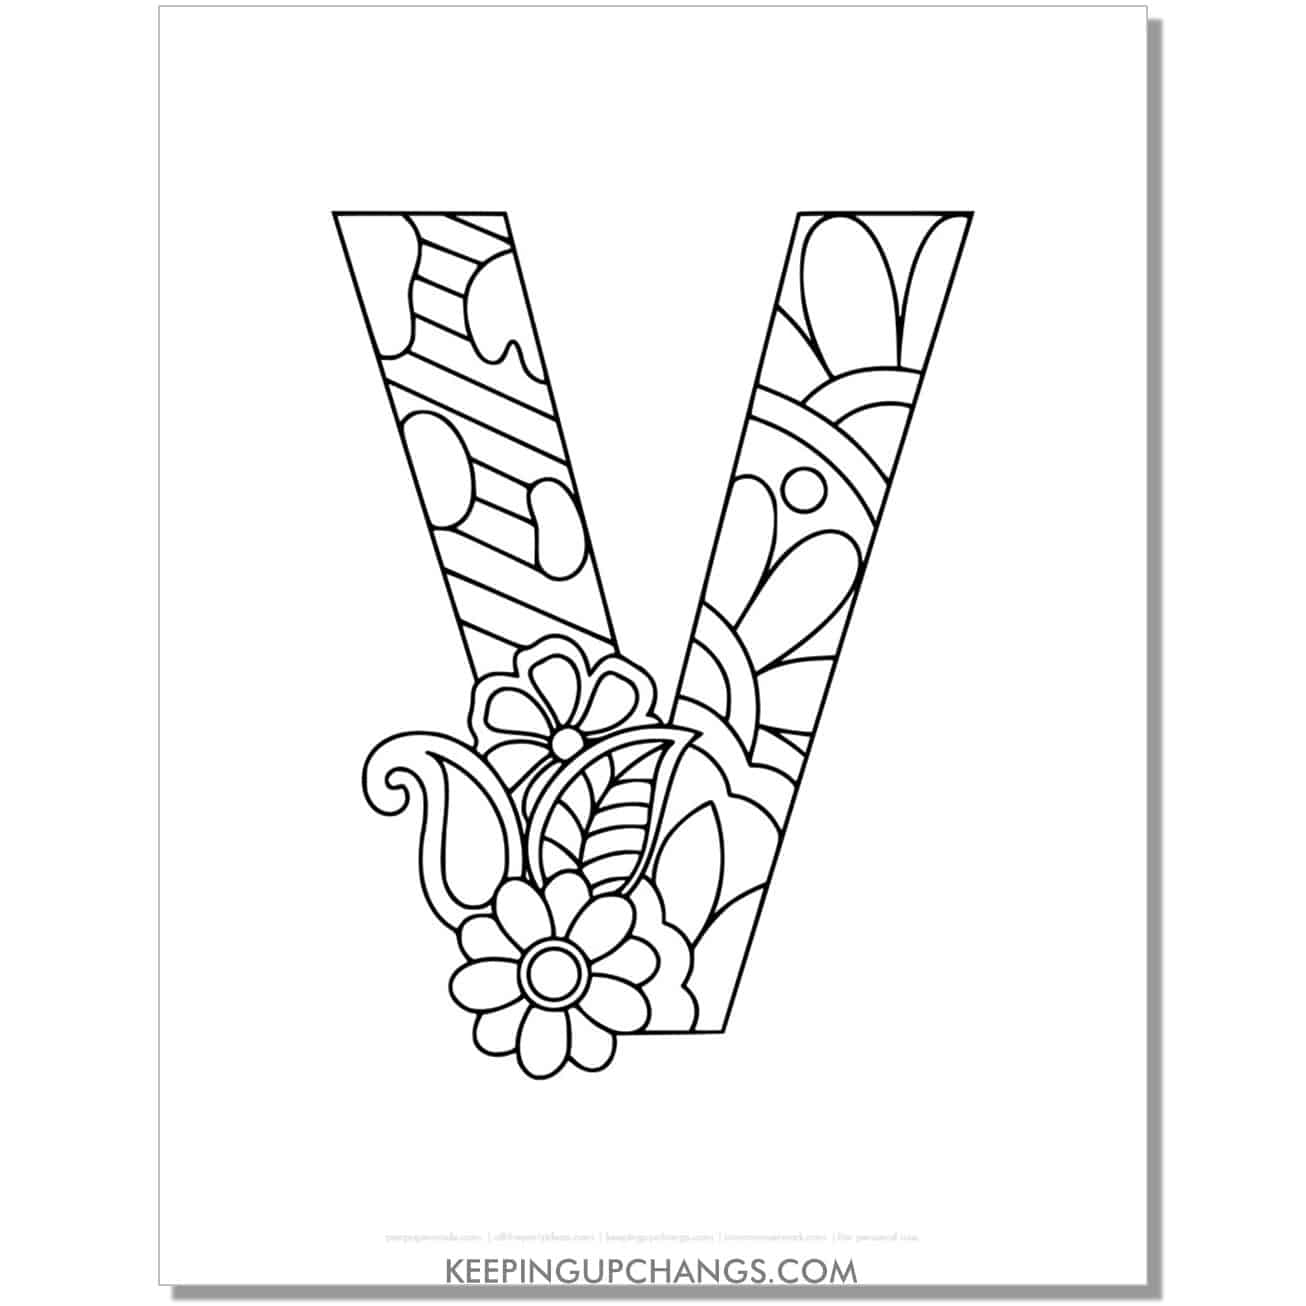 free alphabet v to color, intricate flower mandala zentangle.